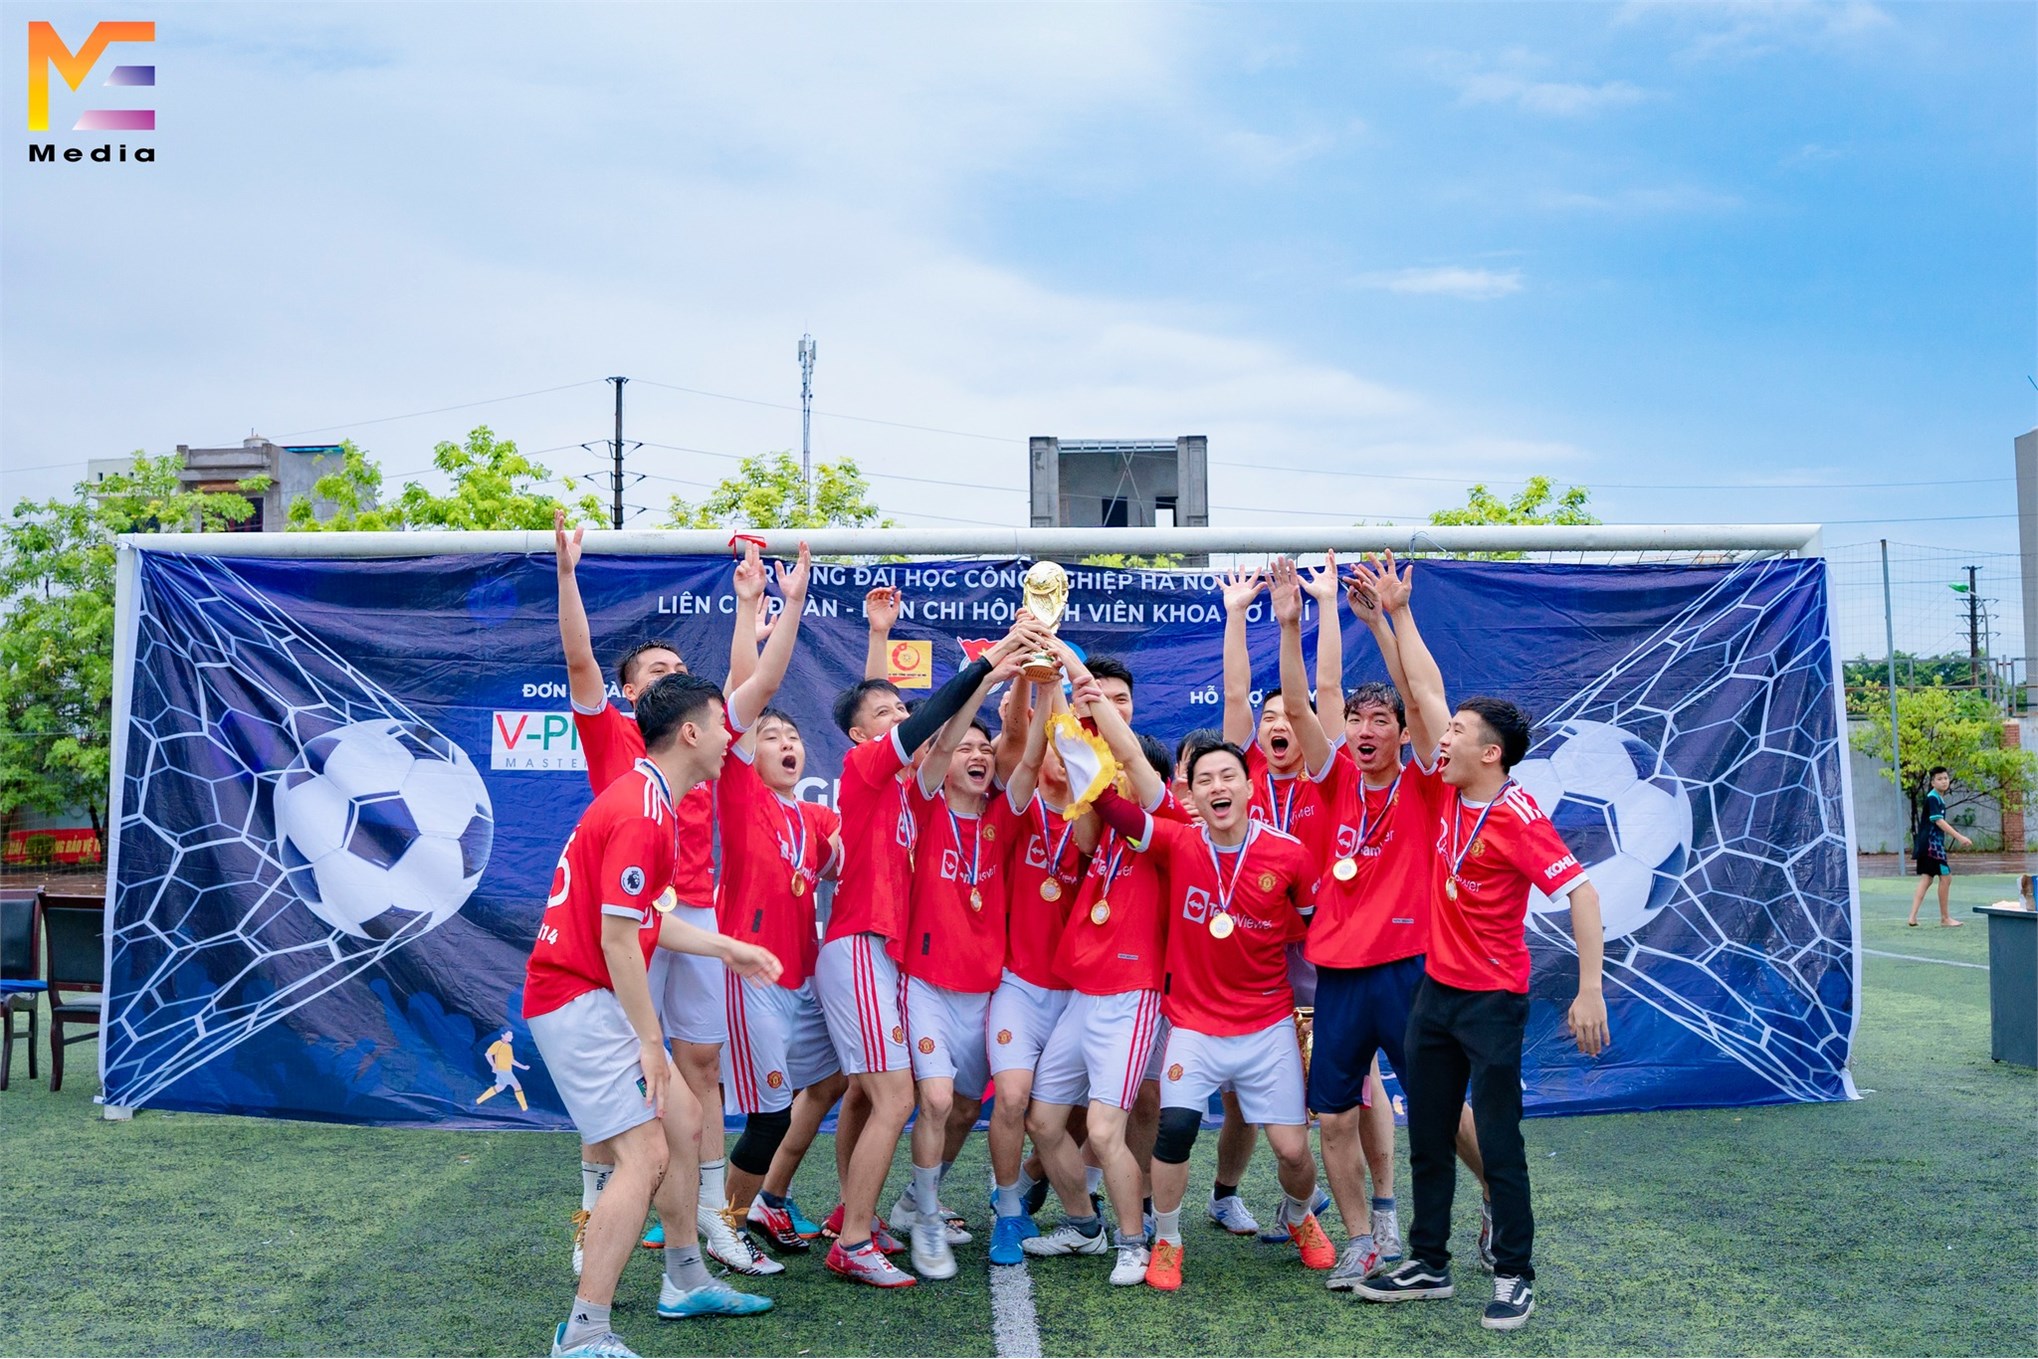 Chung kết bóng đá nam sinh viên Khoa Cơ khí, phần thưởng xứng đáng cho nhà vô địch